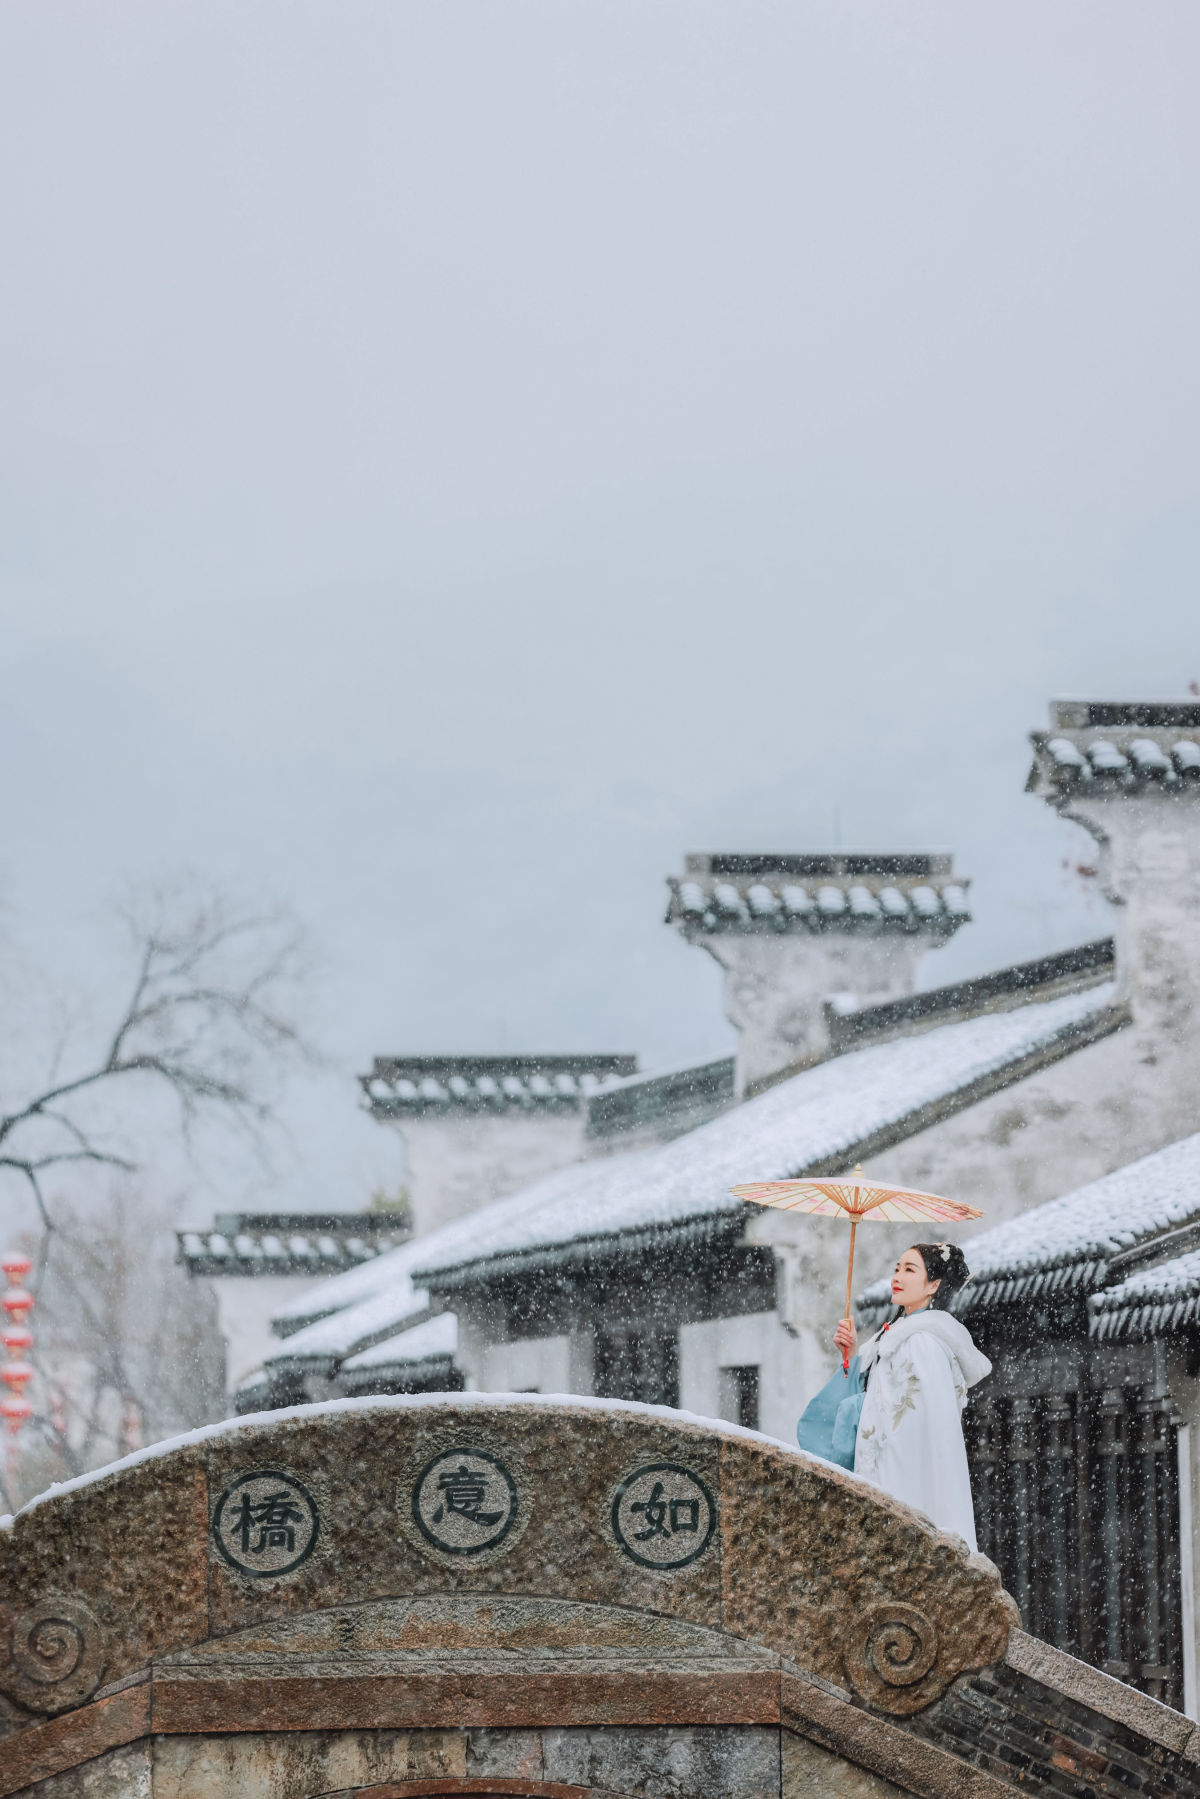 悦香阁_鹿呦《春雪》美图作品图片3